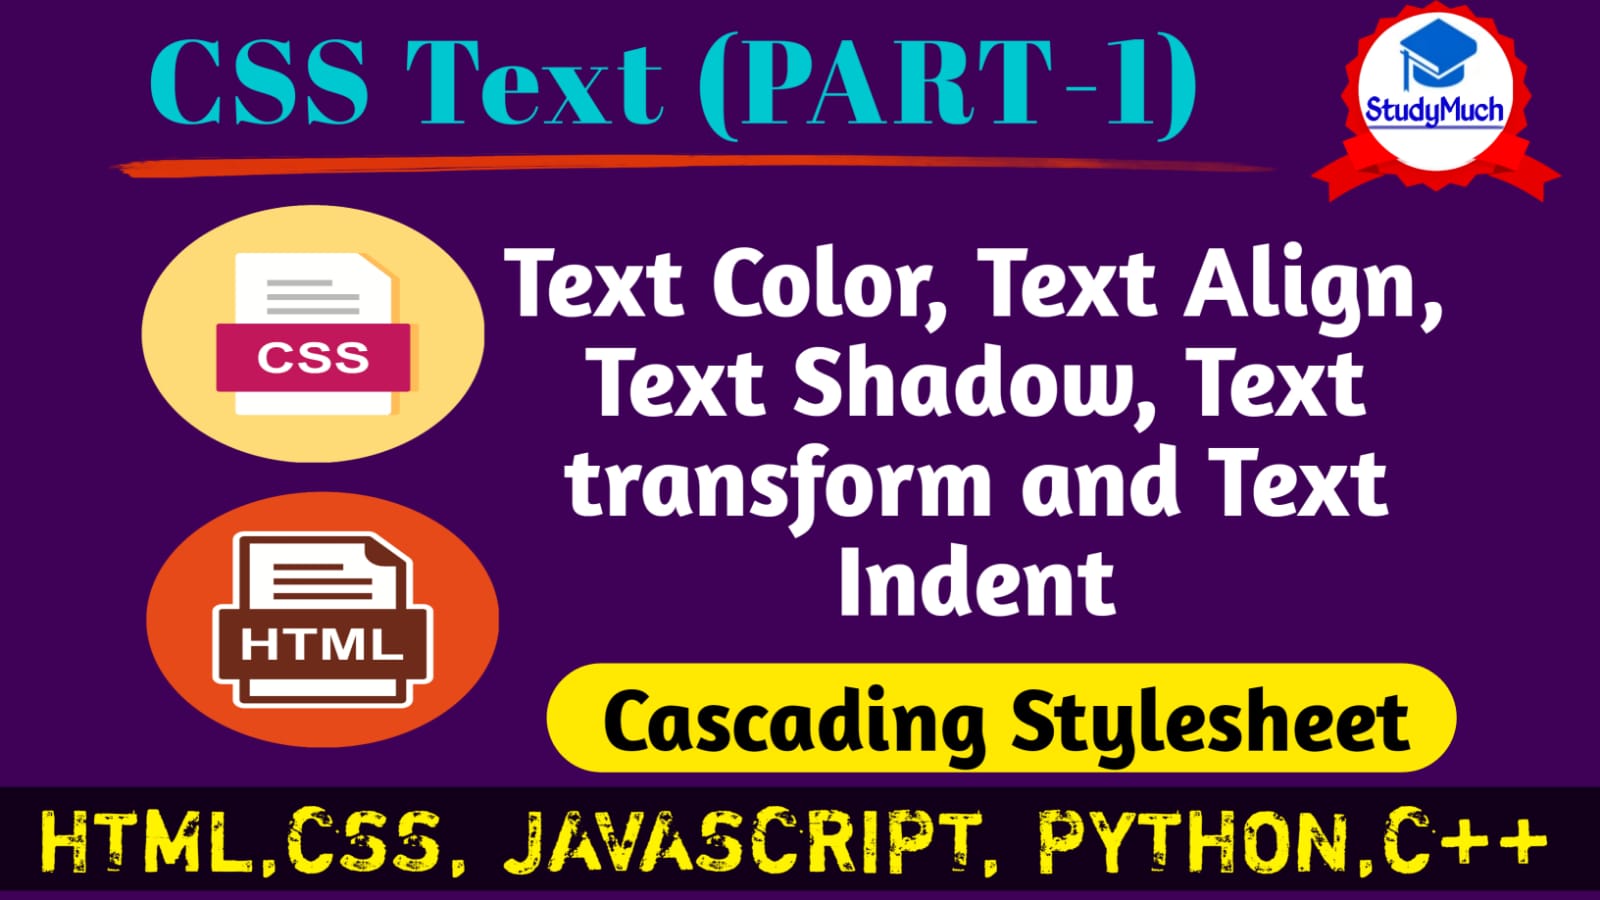 StudyMuch CSS Text Part- 1